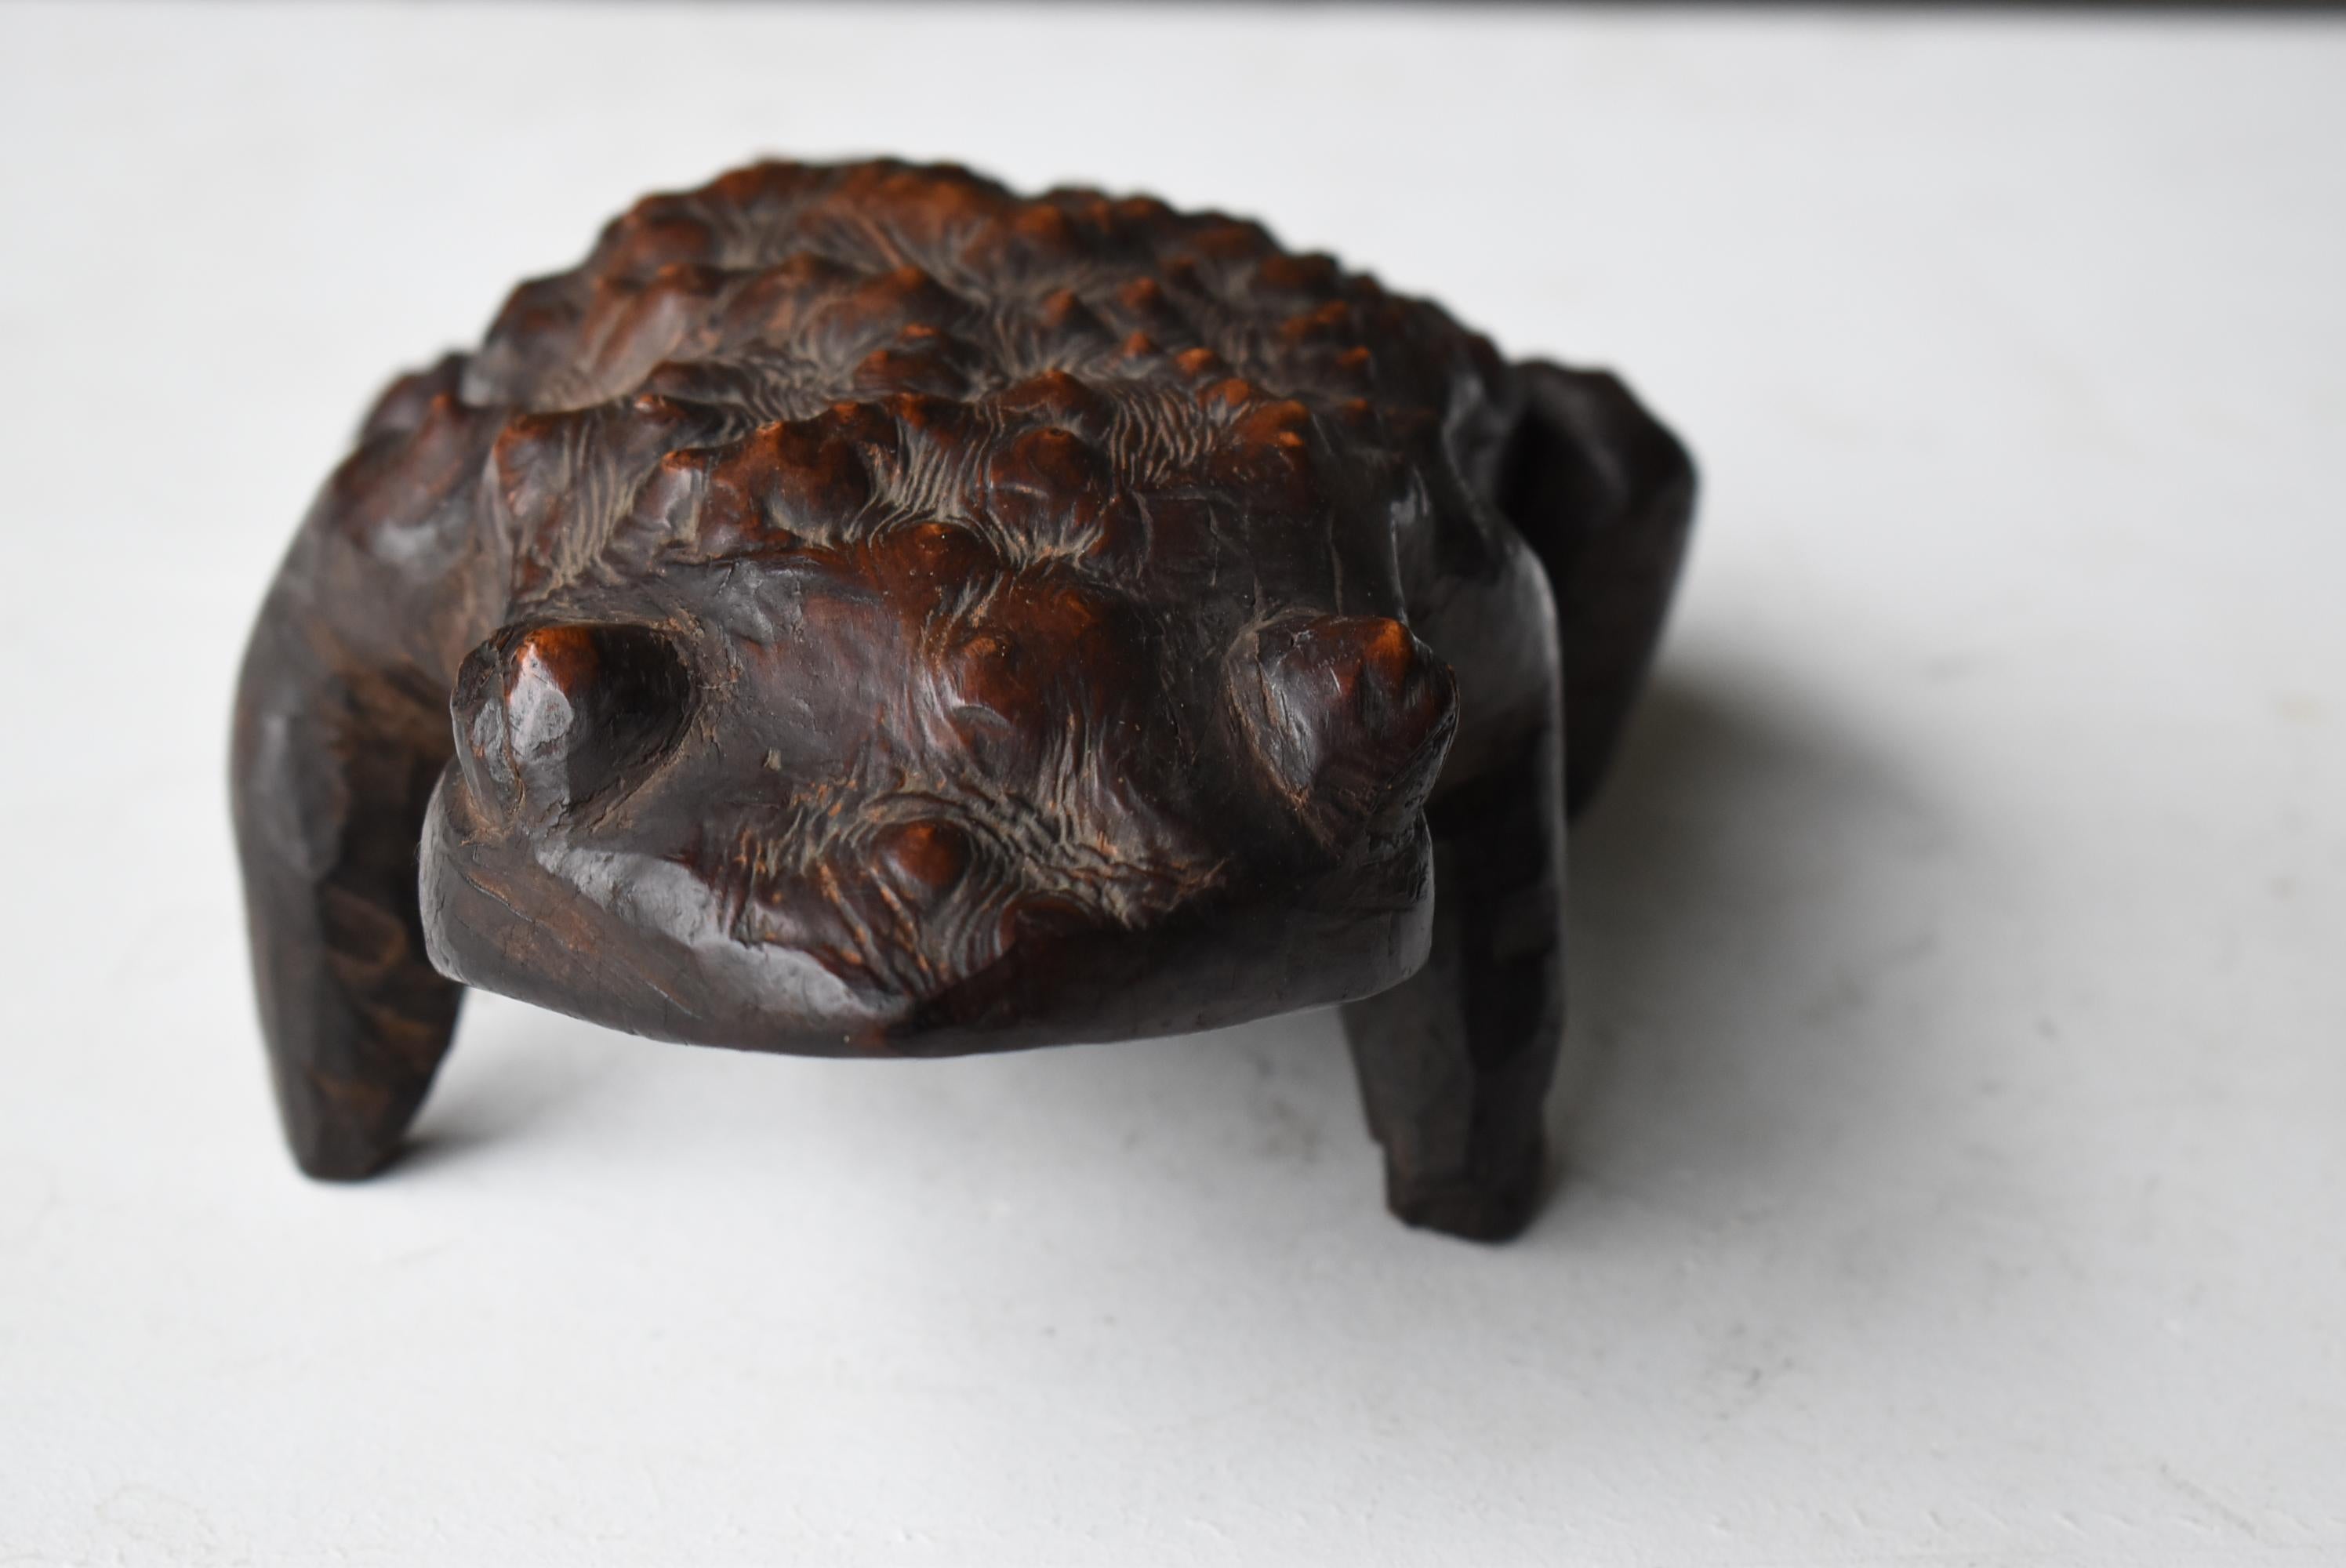 Japanese Antique Wood Carving Frog 1900s-1940s / Sculpture Wabi Sabi  For Sale 2